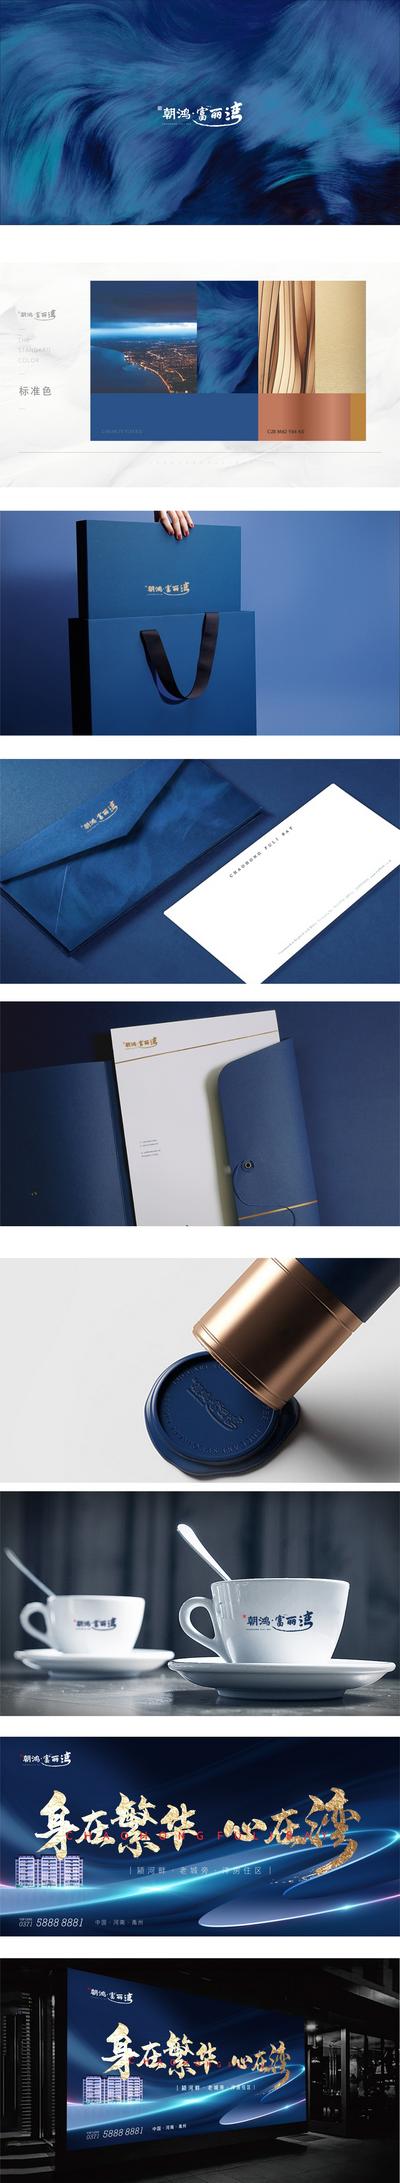 南门网 VI 提案 提报 房地产 调性 主形象 logo设计 物料 手提袋 蓝金 大气